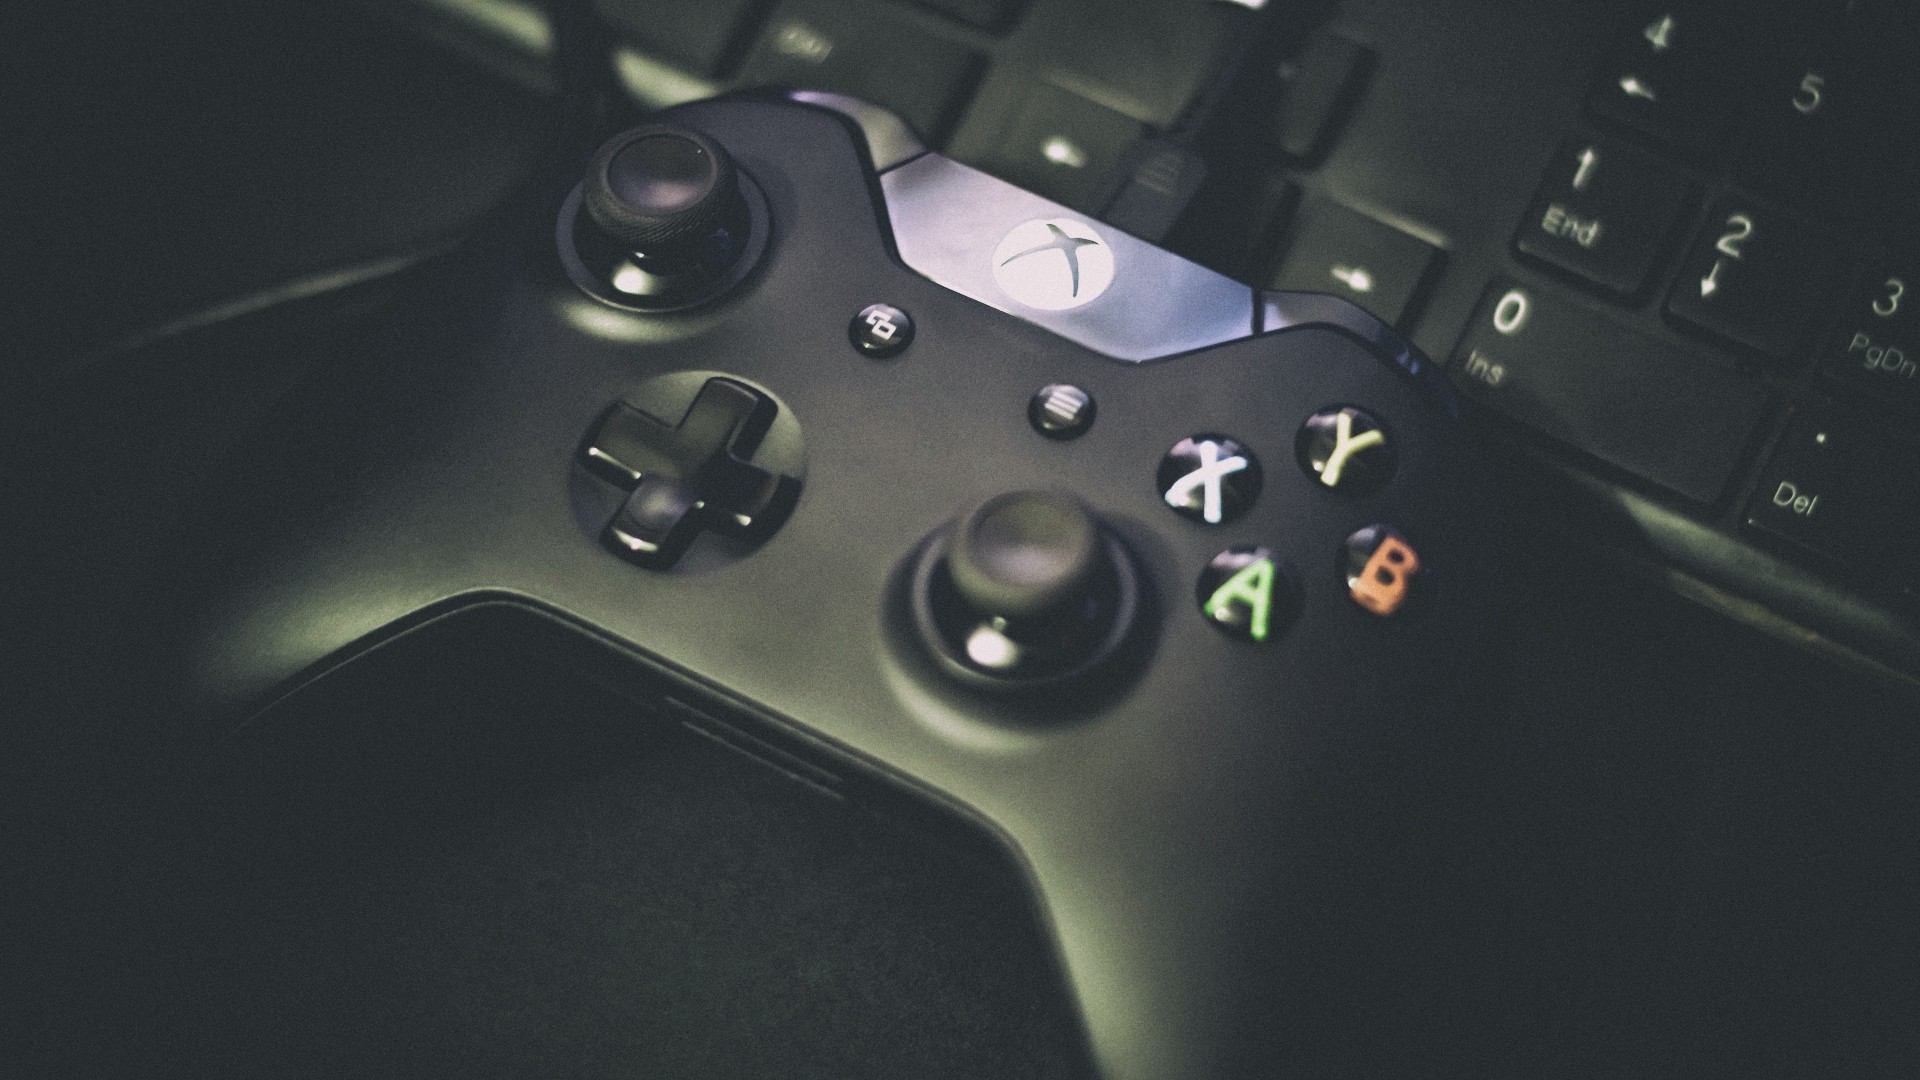 Como jogar no Xbox One com mouse e teclado? 